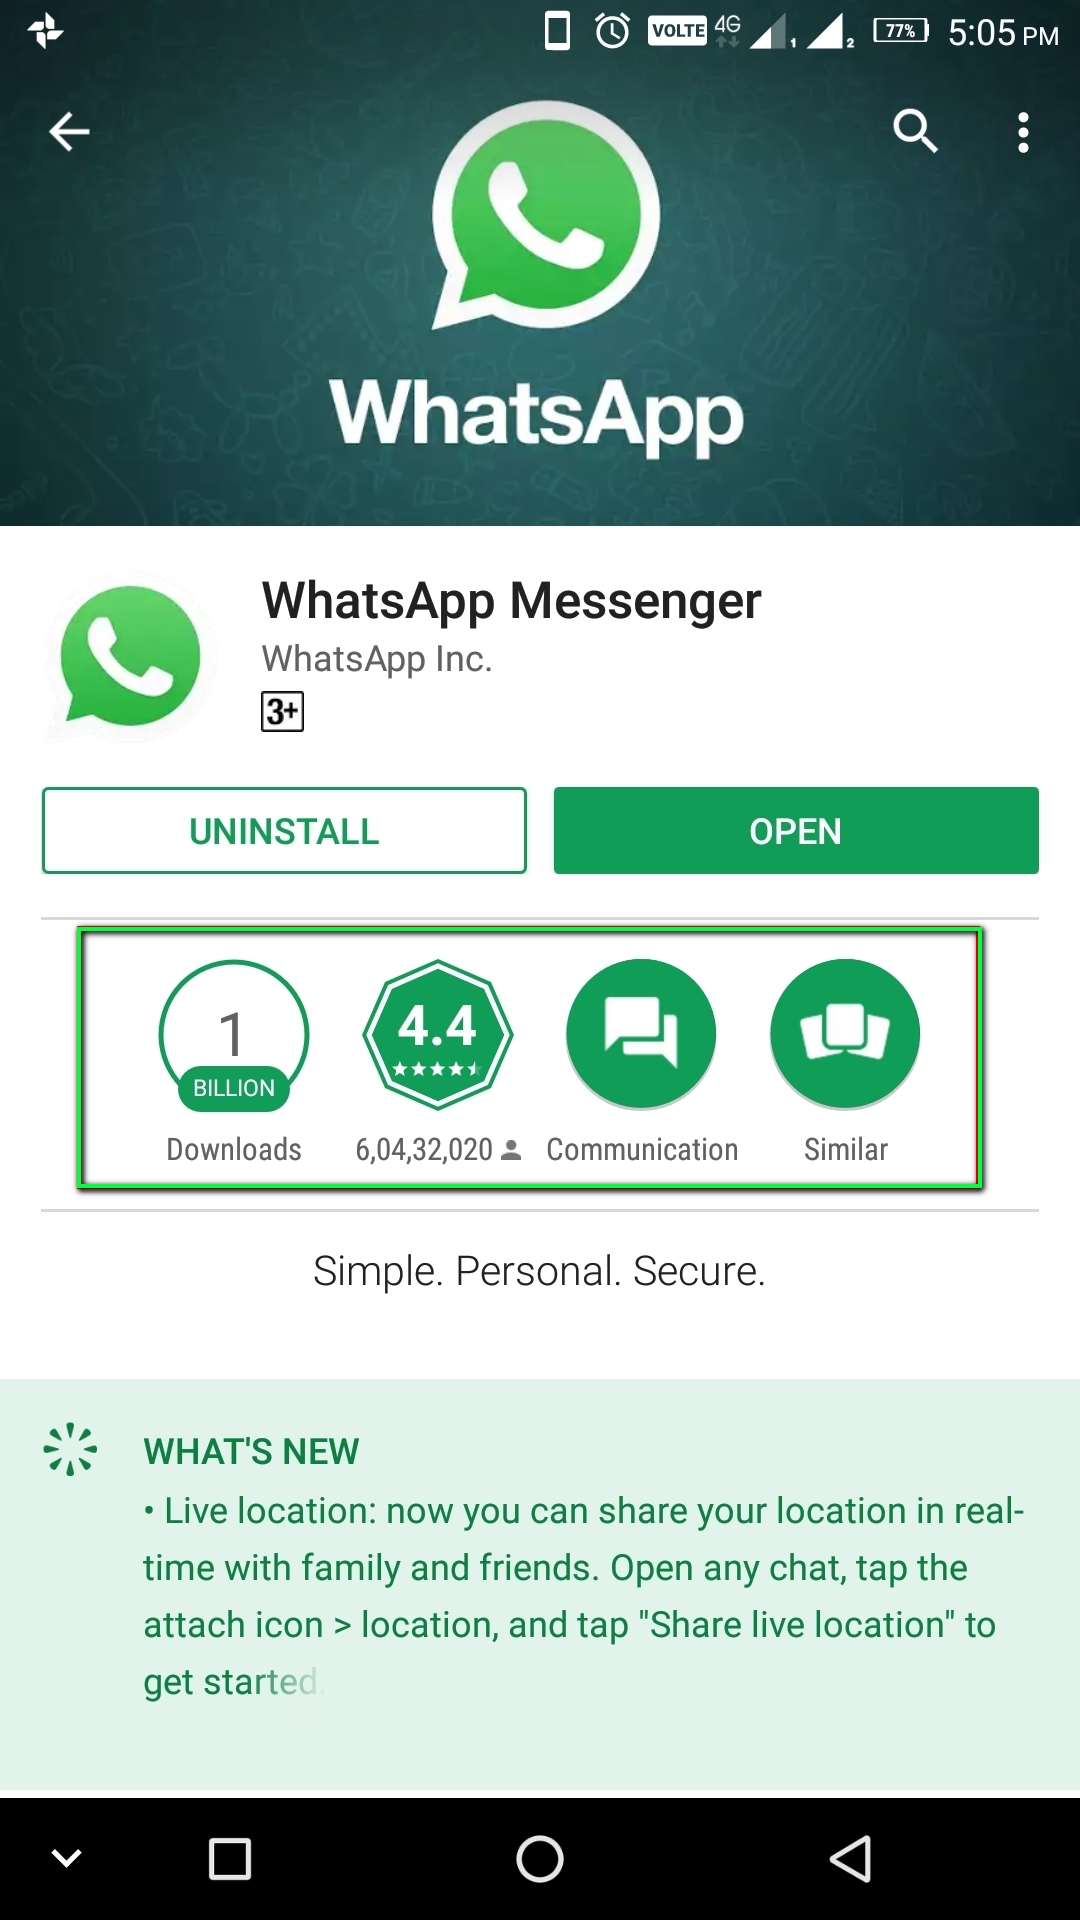 whatsapp for ipad 8.1